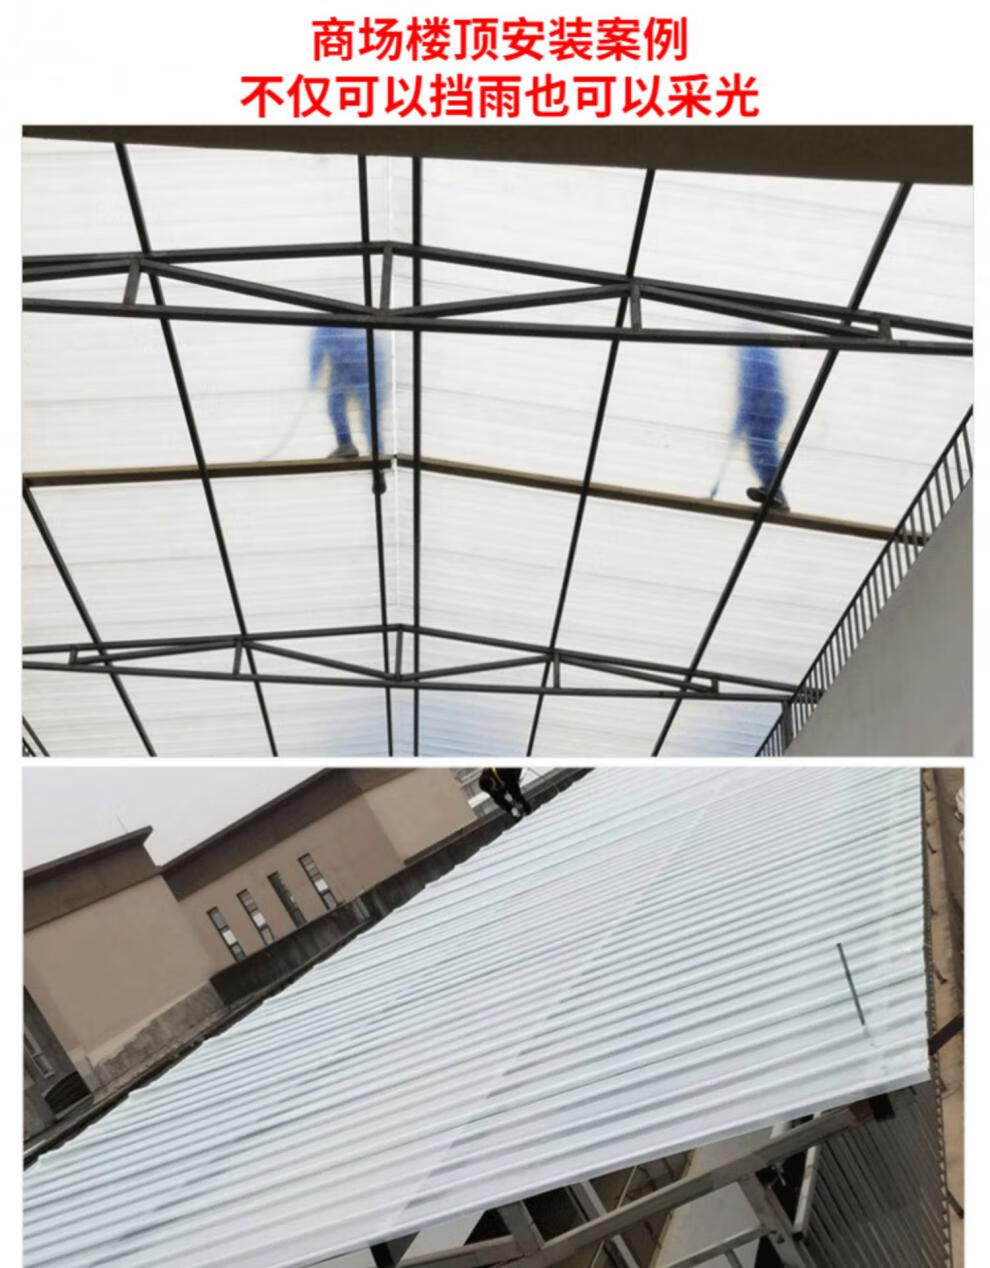 彩钢板屋顶采光瓦透明瓦彩钢瓦玻璃钢树脂石棉瓦亮瓦阳光板彩钢瓦屋顶